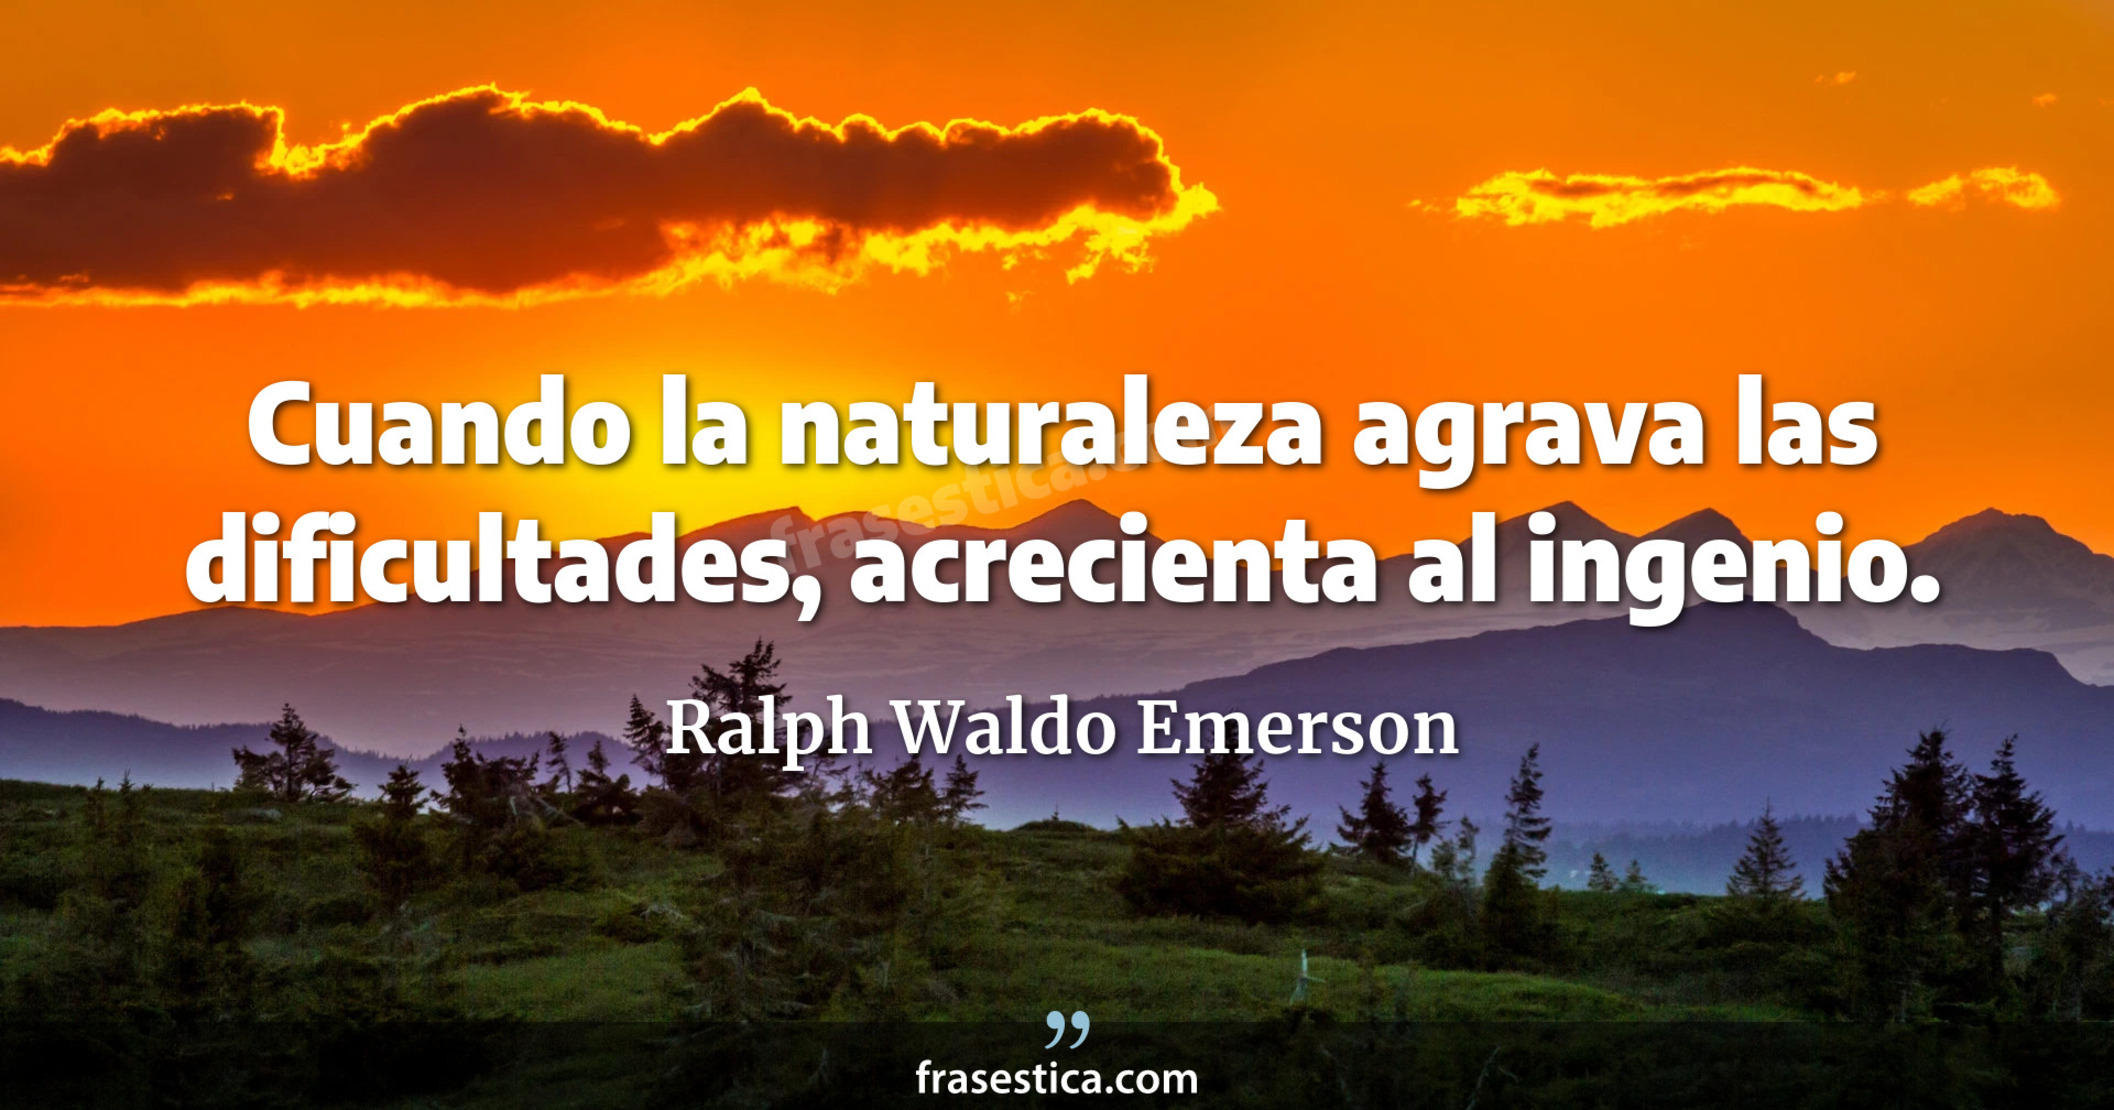 Cuando la naturaleza agrava las dificultades, acrecienta al ingenio. - Ralph Waldo Emerson